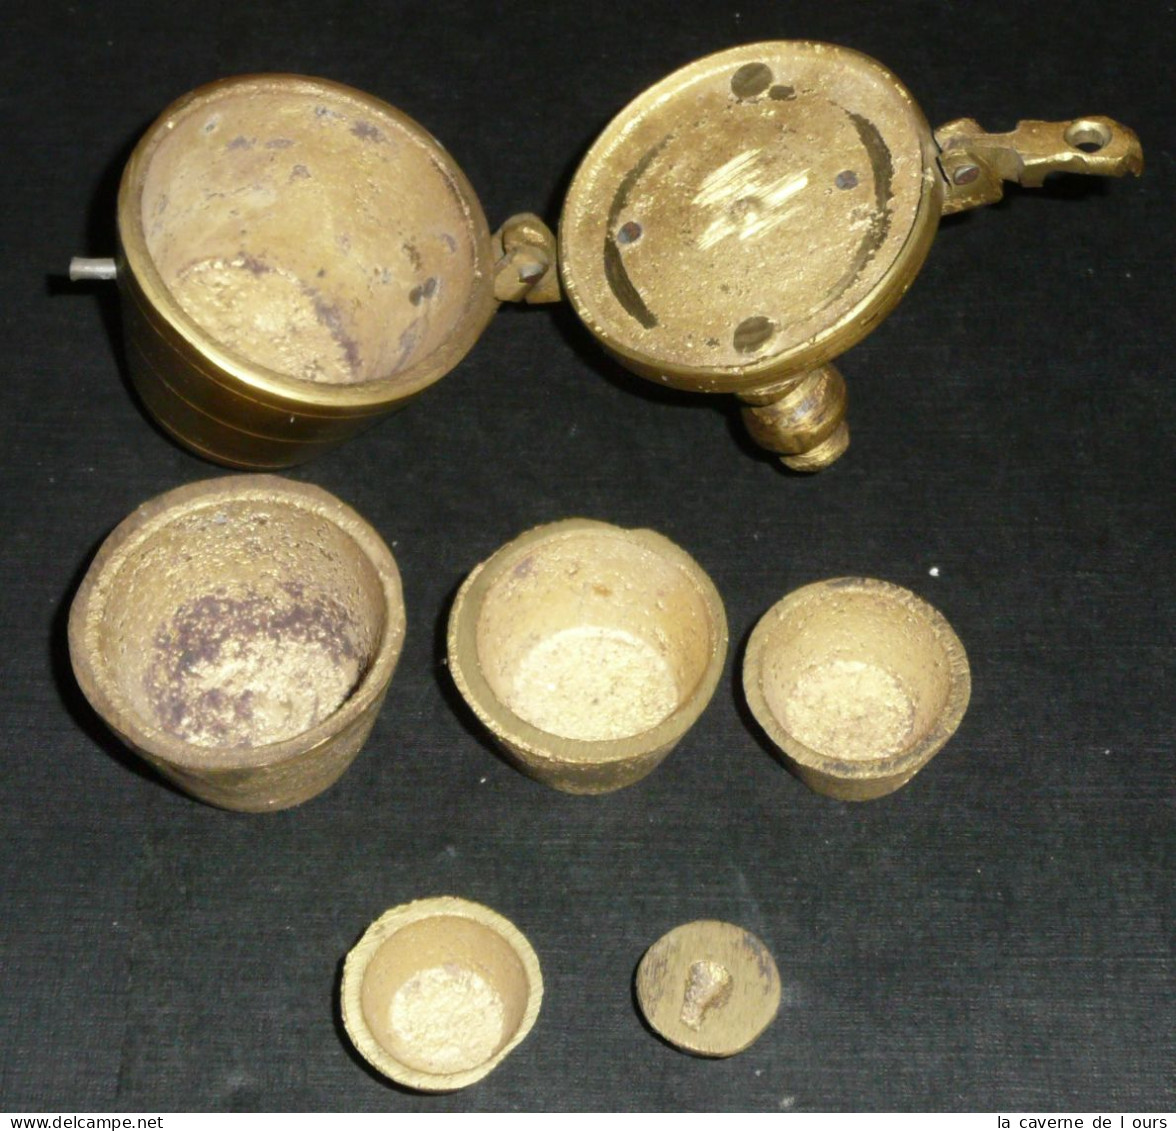 Rare Série De Poids Godets En Bronze, Poinçons "1 6 M" - Ancient Tools